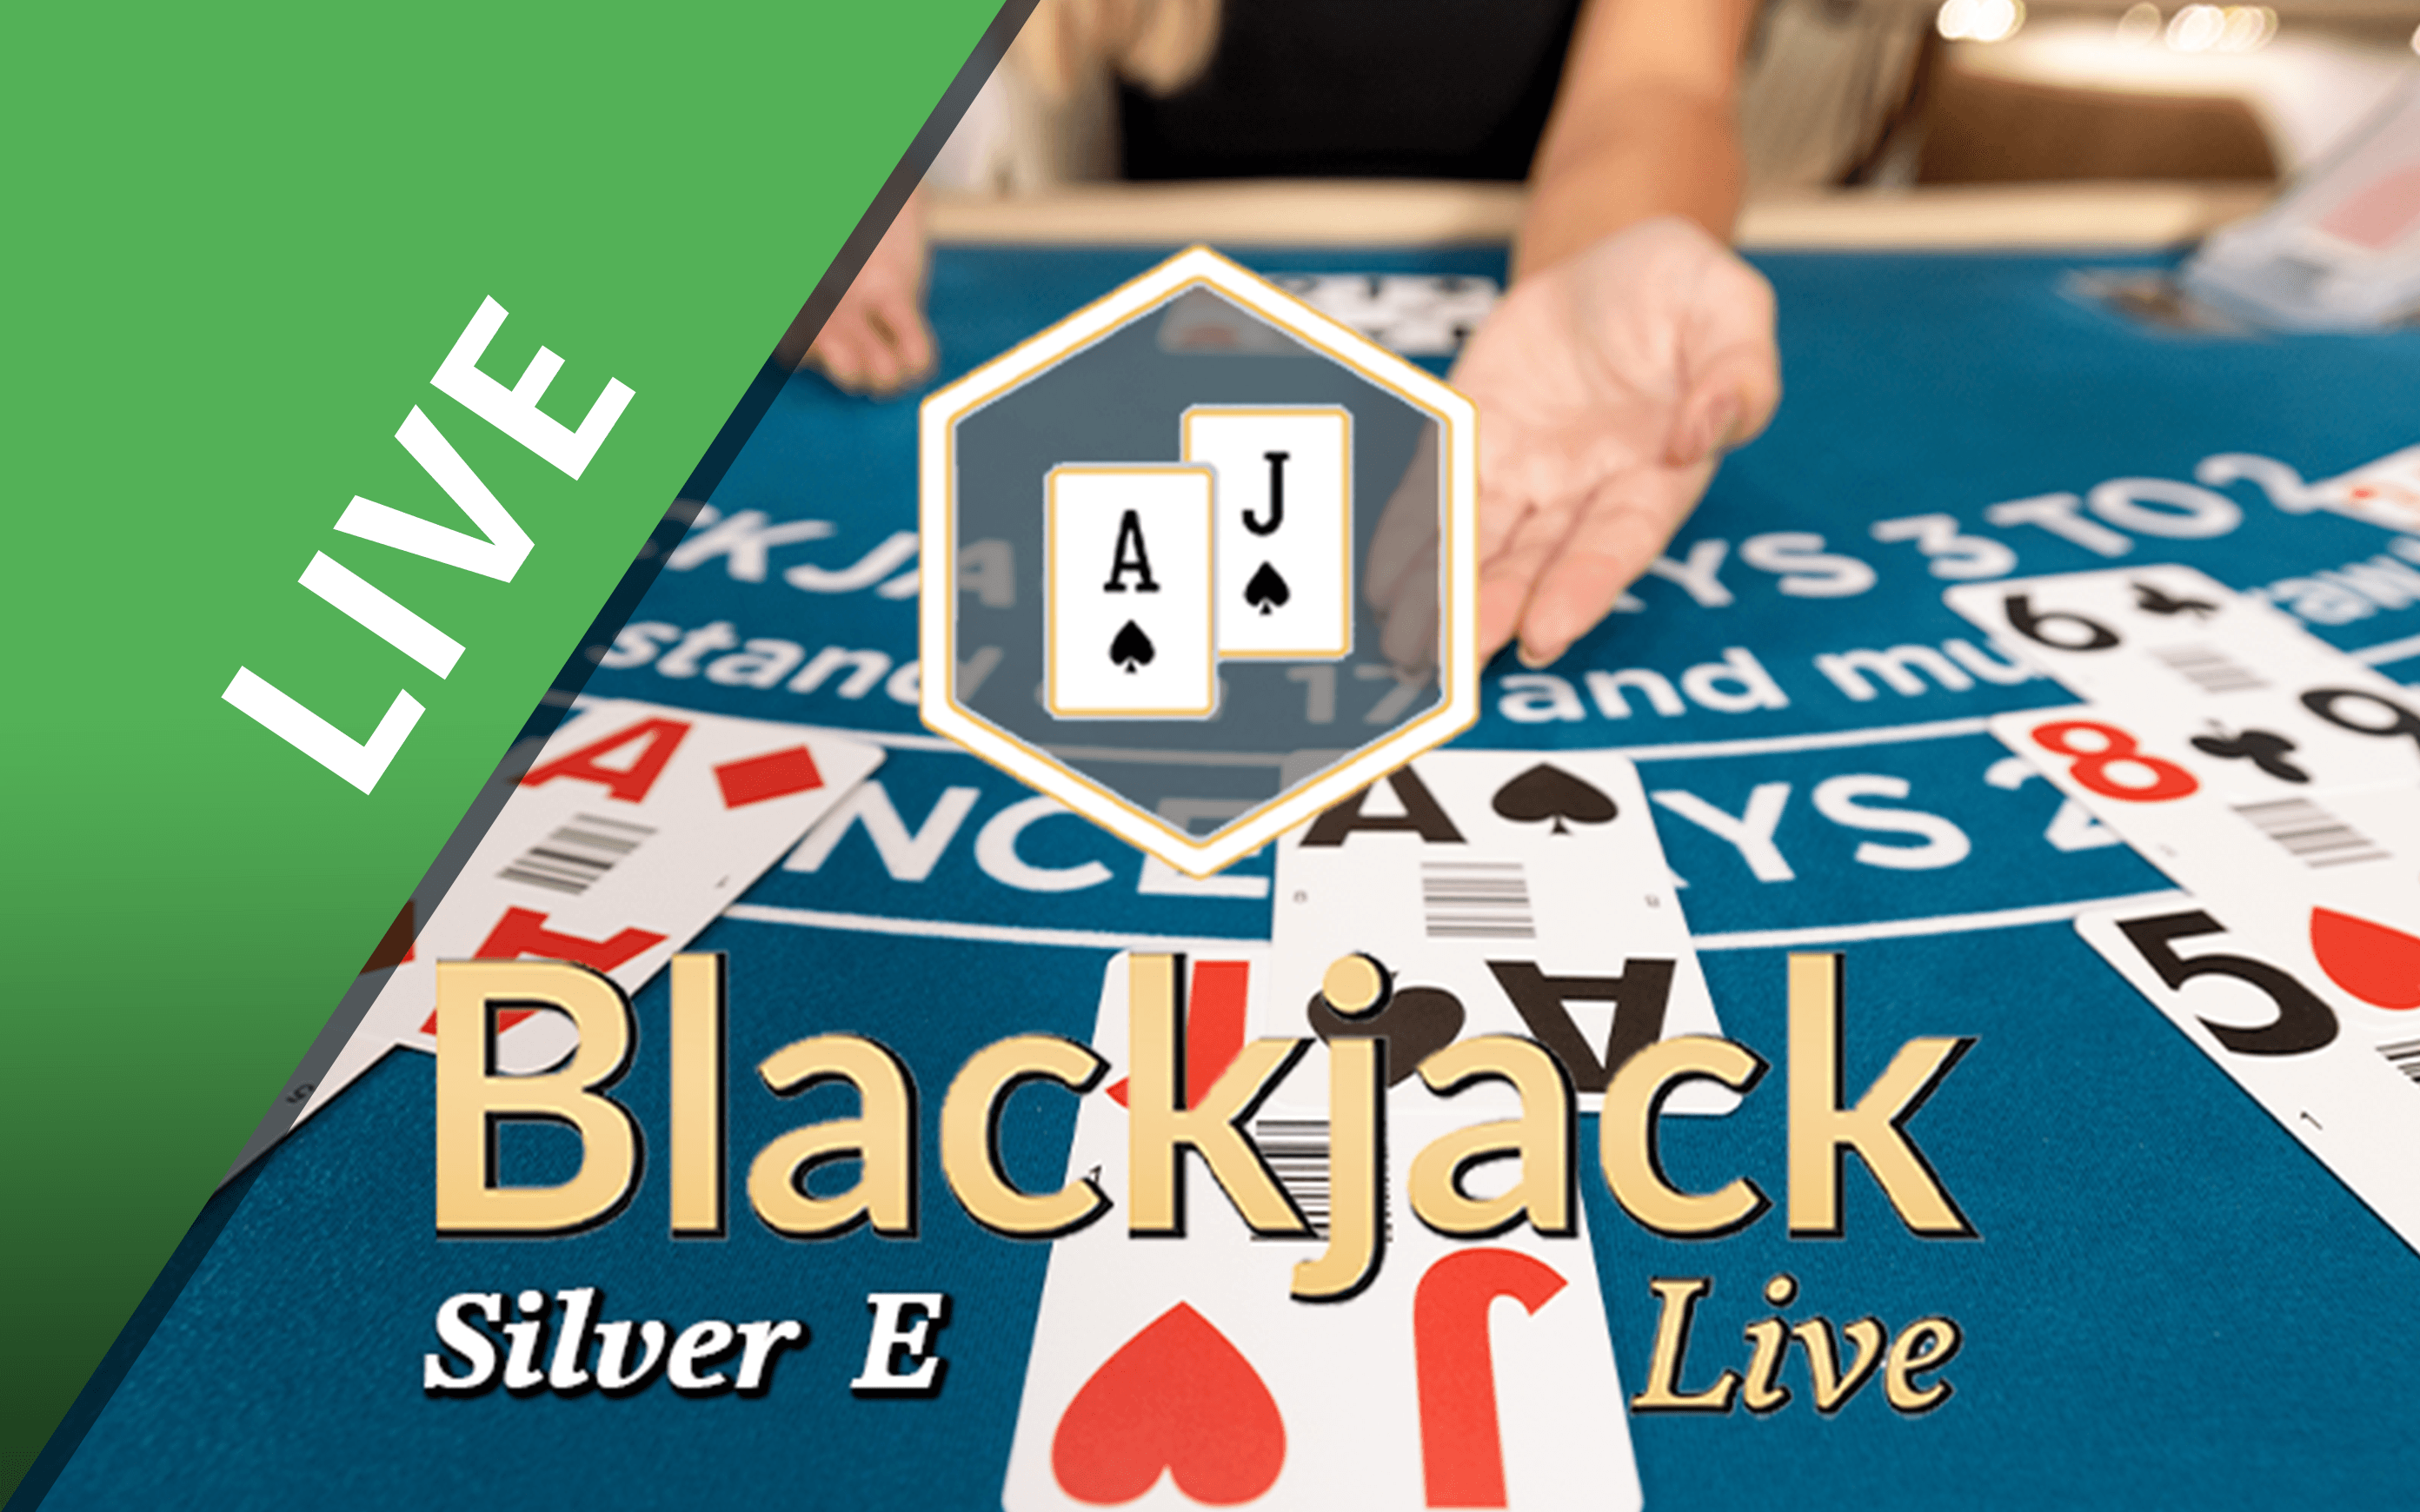 Starcasino.be online casino üzerinden Blackjack Silver E oynayın